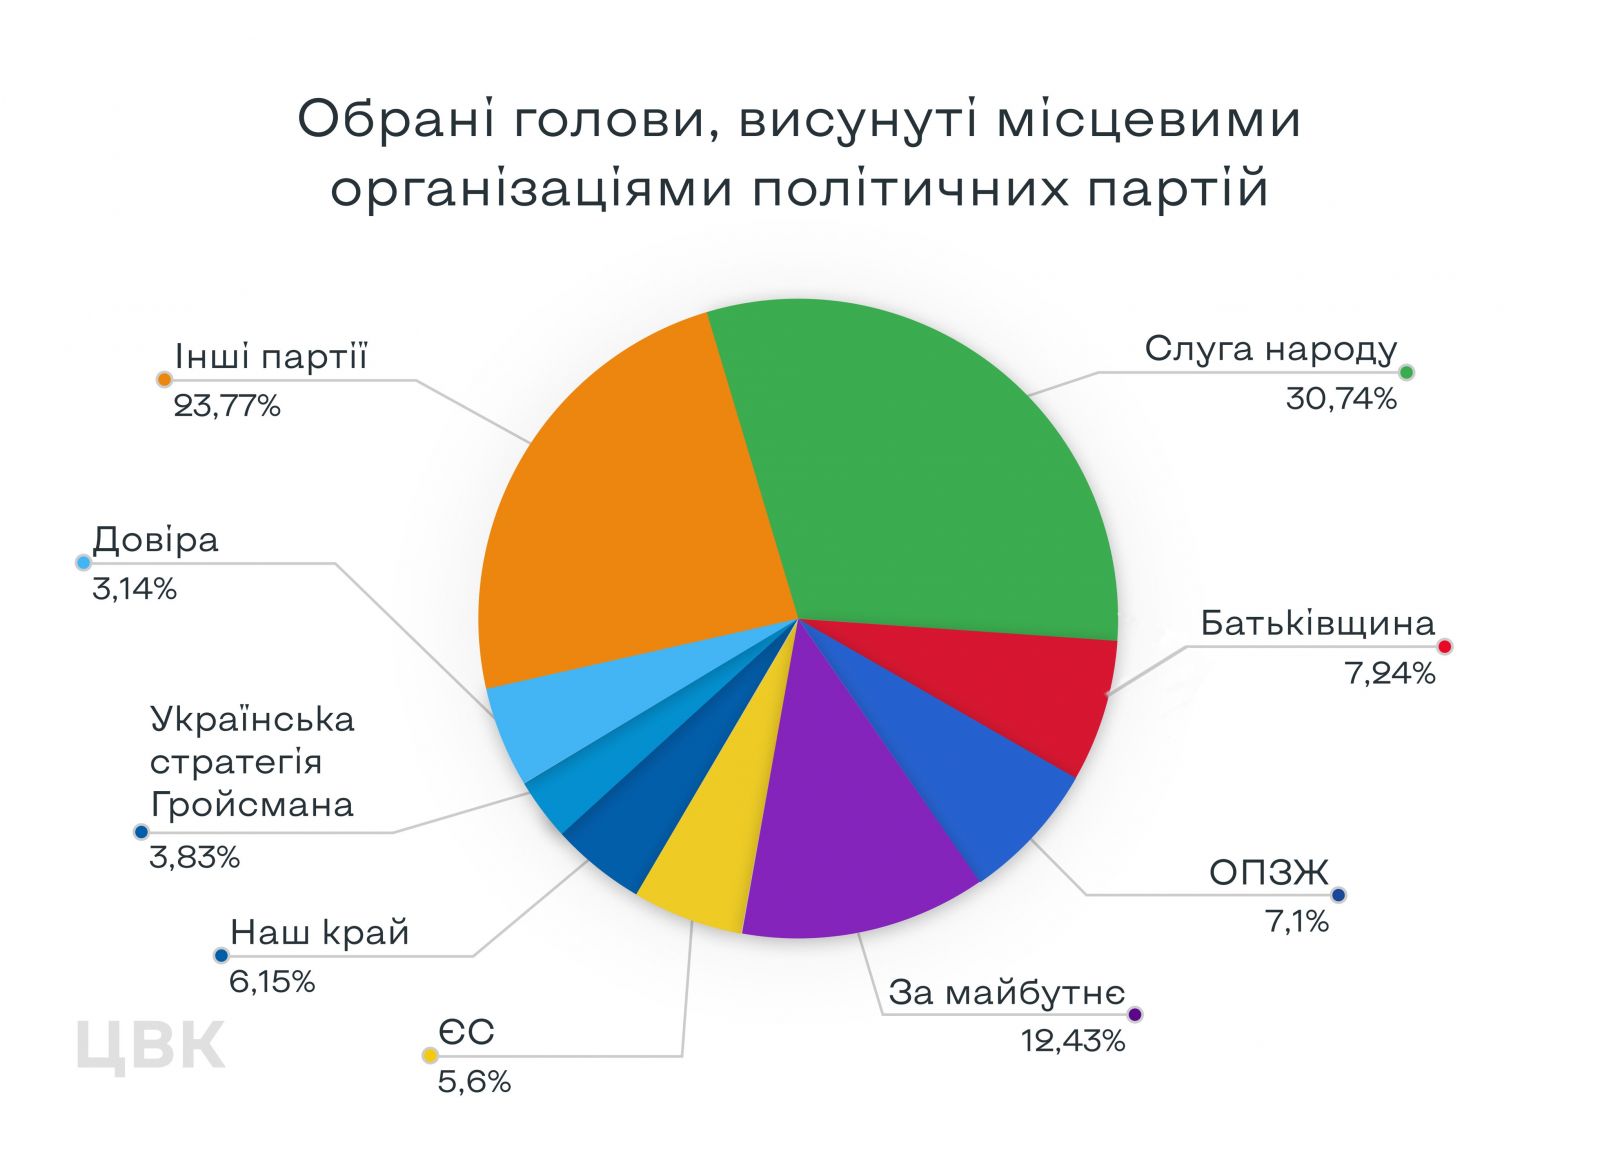 Рейтинг партий-победителей на выборах. Инфографика: ЦИК